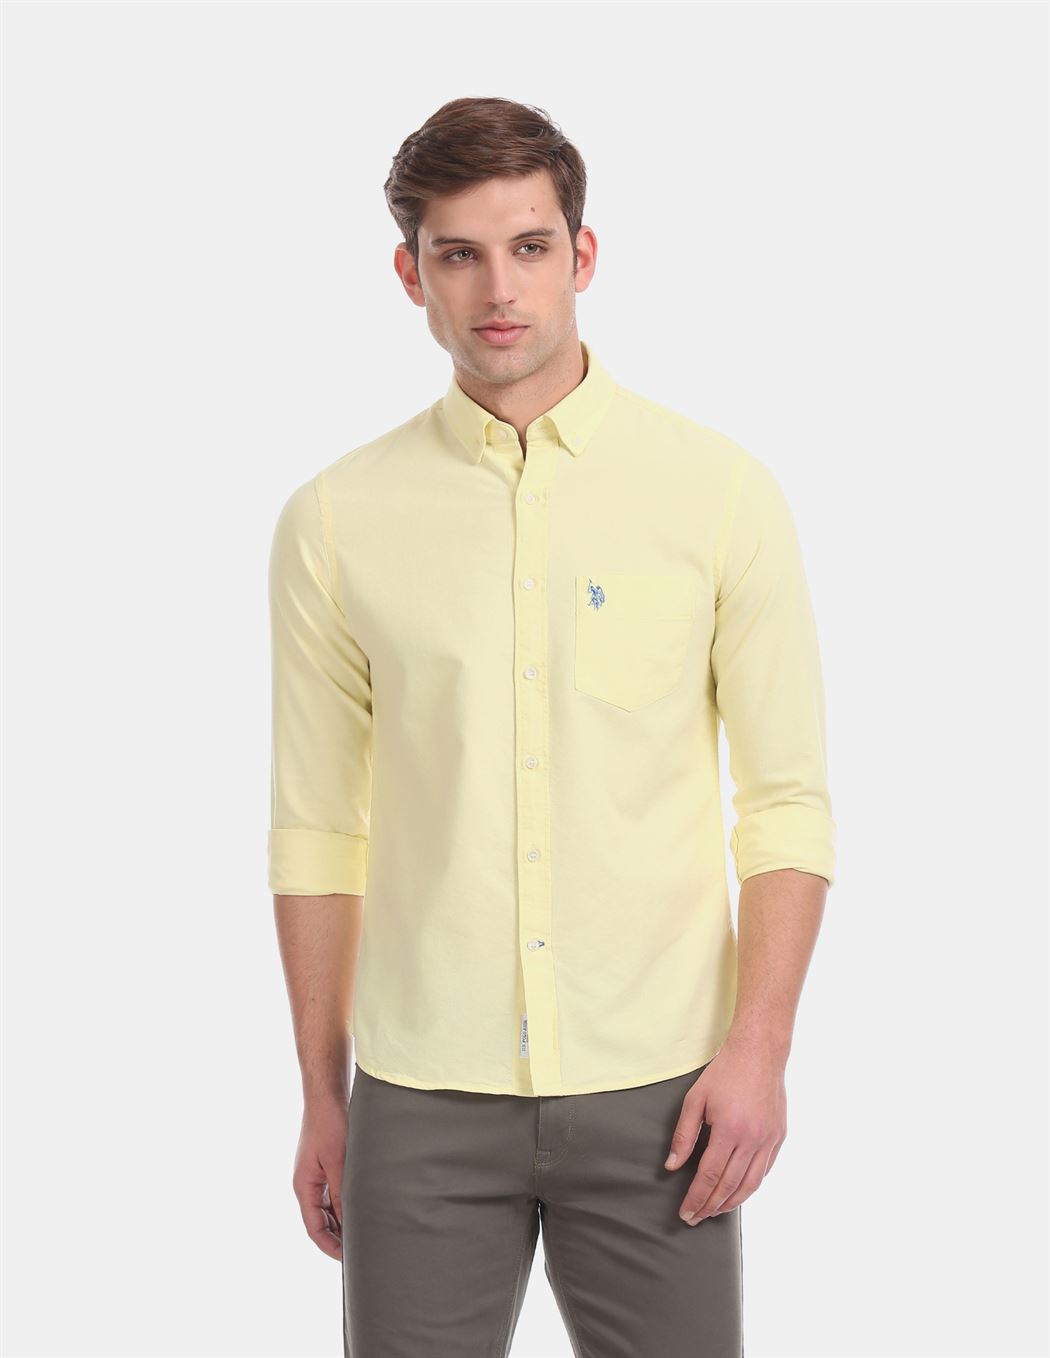 U.S.Polo Assn. Men Casual Wear Yellow Shirt